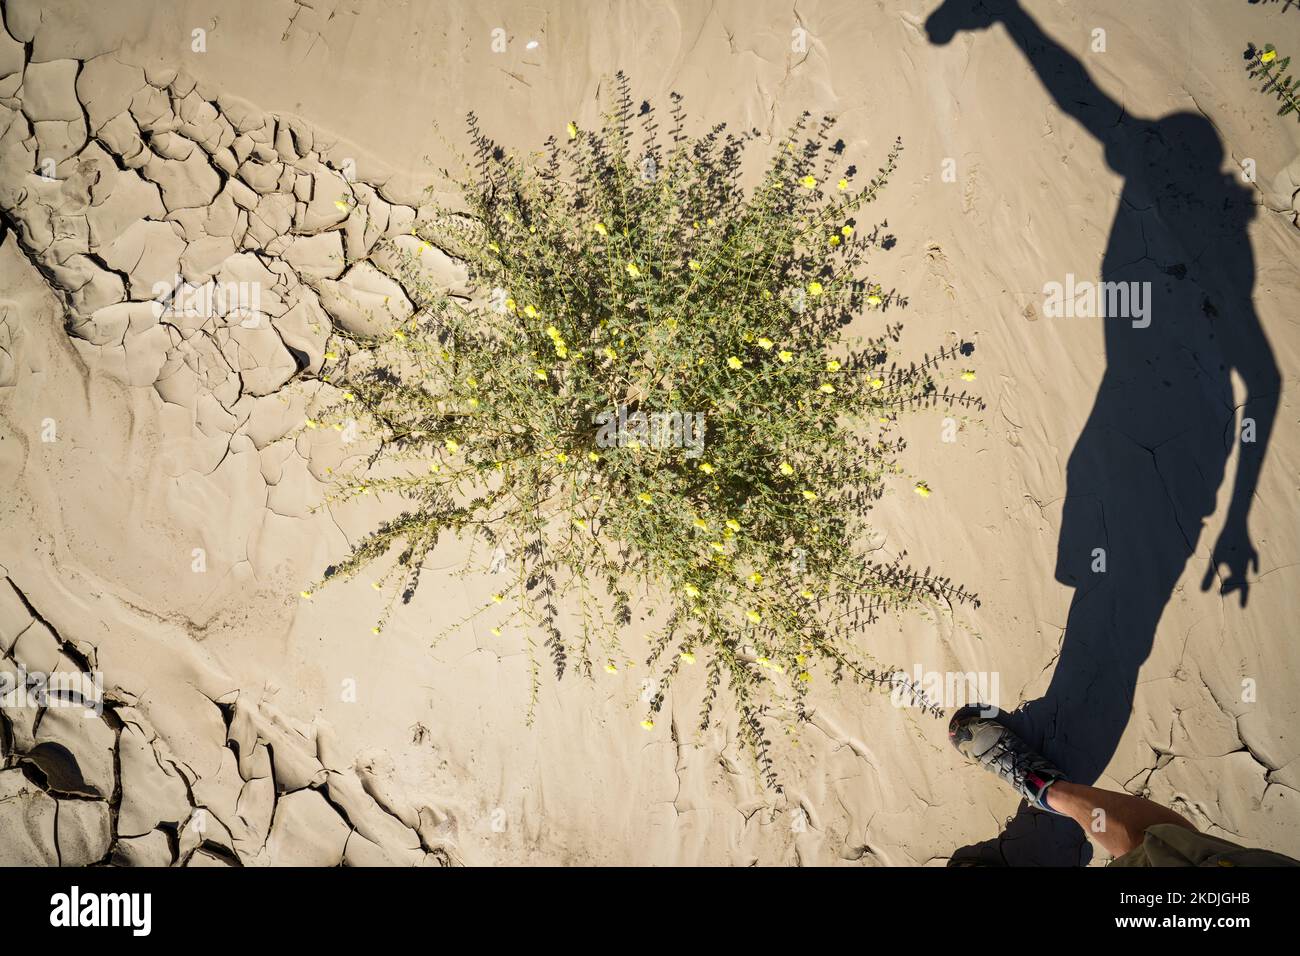 Grüne Pflanzen wachsen in trockenen Flussbett-Mustern mit Schatten des Fotografen. Swakop River, Namibia, Afrika Stockfoto